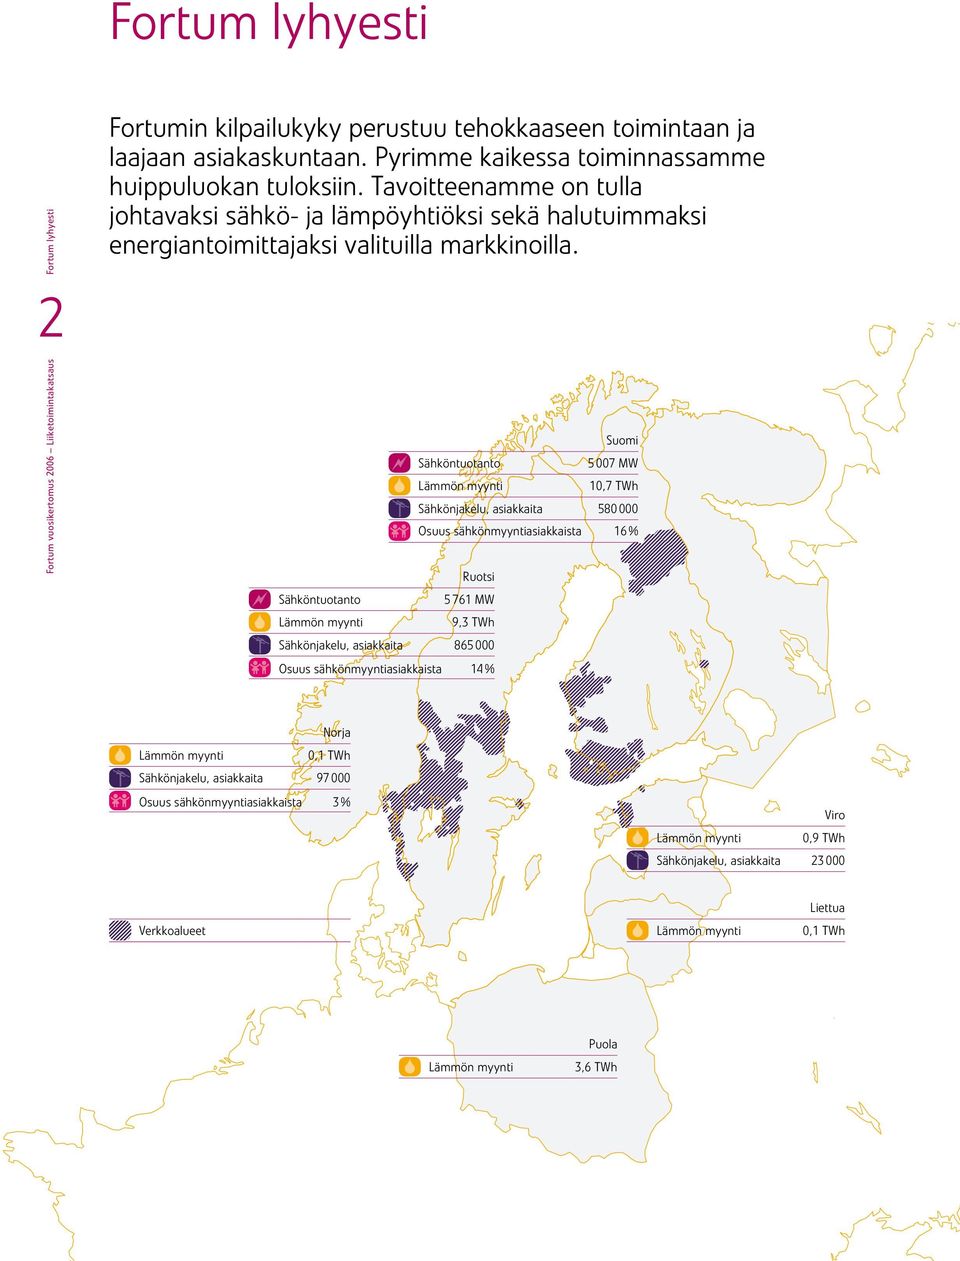 Sähköntuotanto Lämmön myynti Sähköntuotanto Lämmön myynti Suomi 5 7 MW 1,7 TWh Sähkönjakeu, asiakkaita 58 Osuus sähkönmyyntiasiakkaista 16 % Ruotsi 5 761 MW 9,3 TWh Sähkönjakeu, asiakkaita